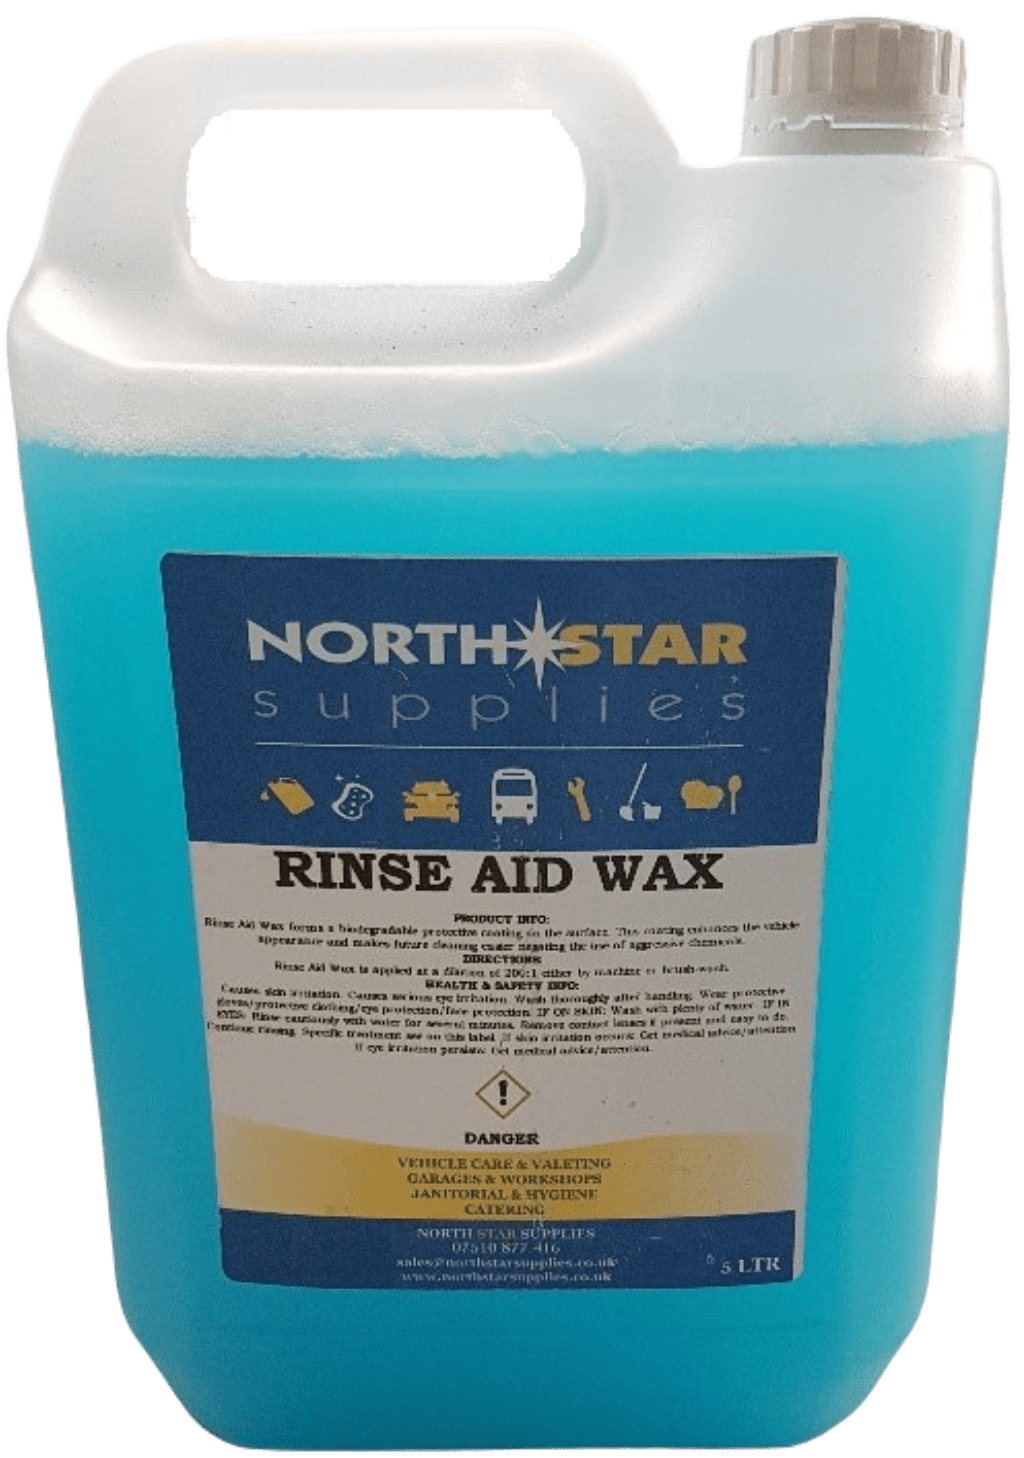 Rinse Aid Wax – North Star Supplies – 5 Ltr – North Star Supplies